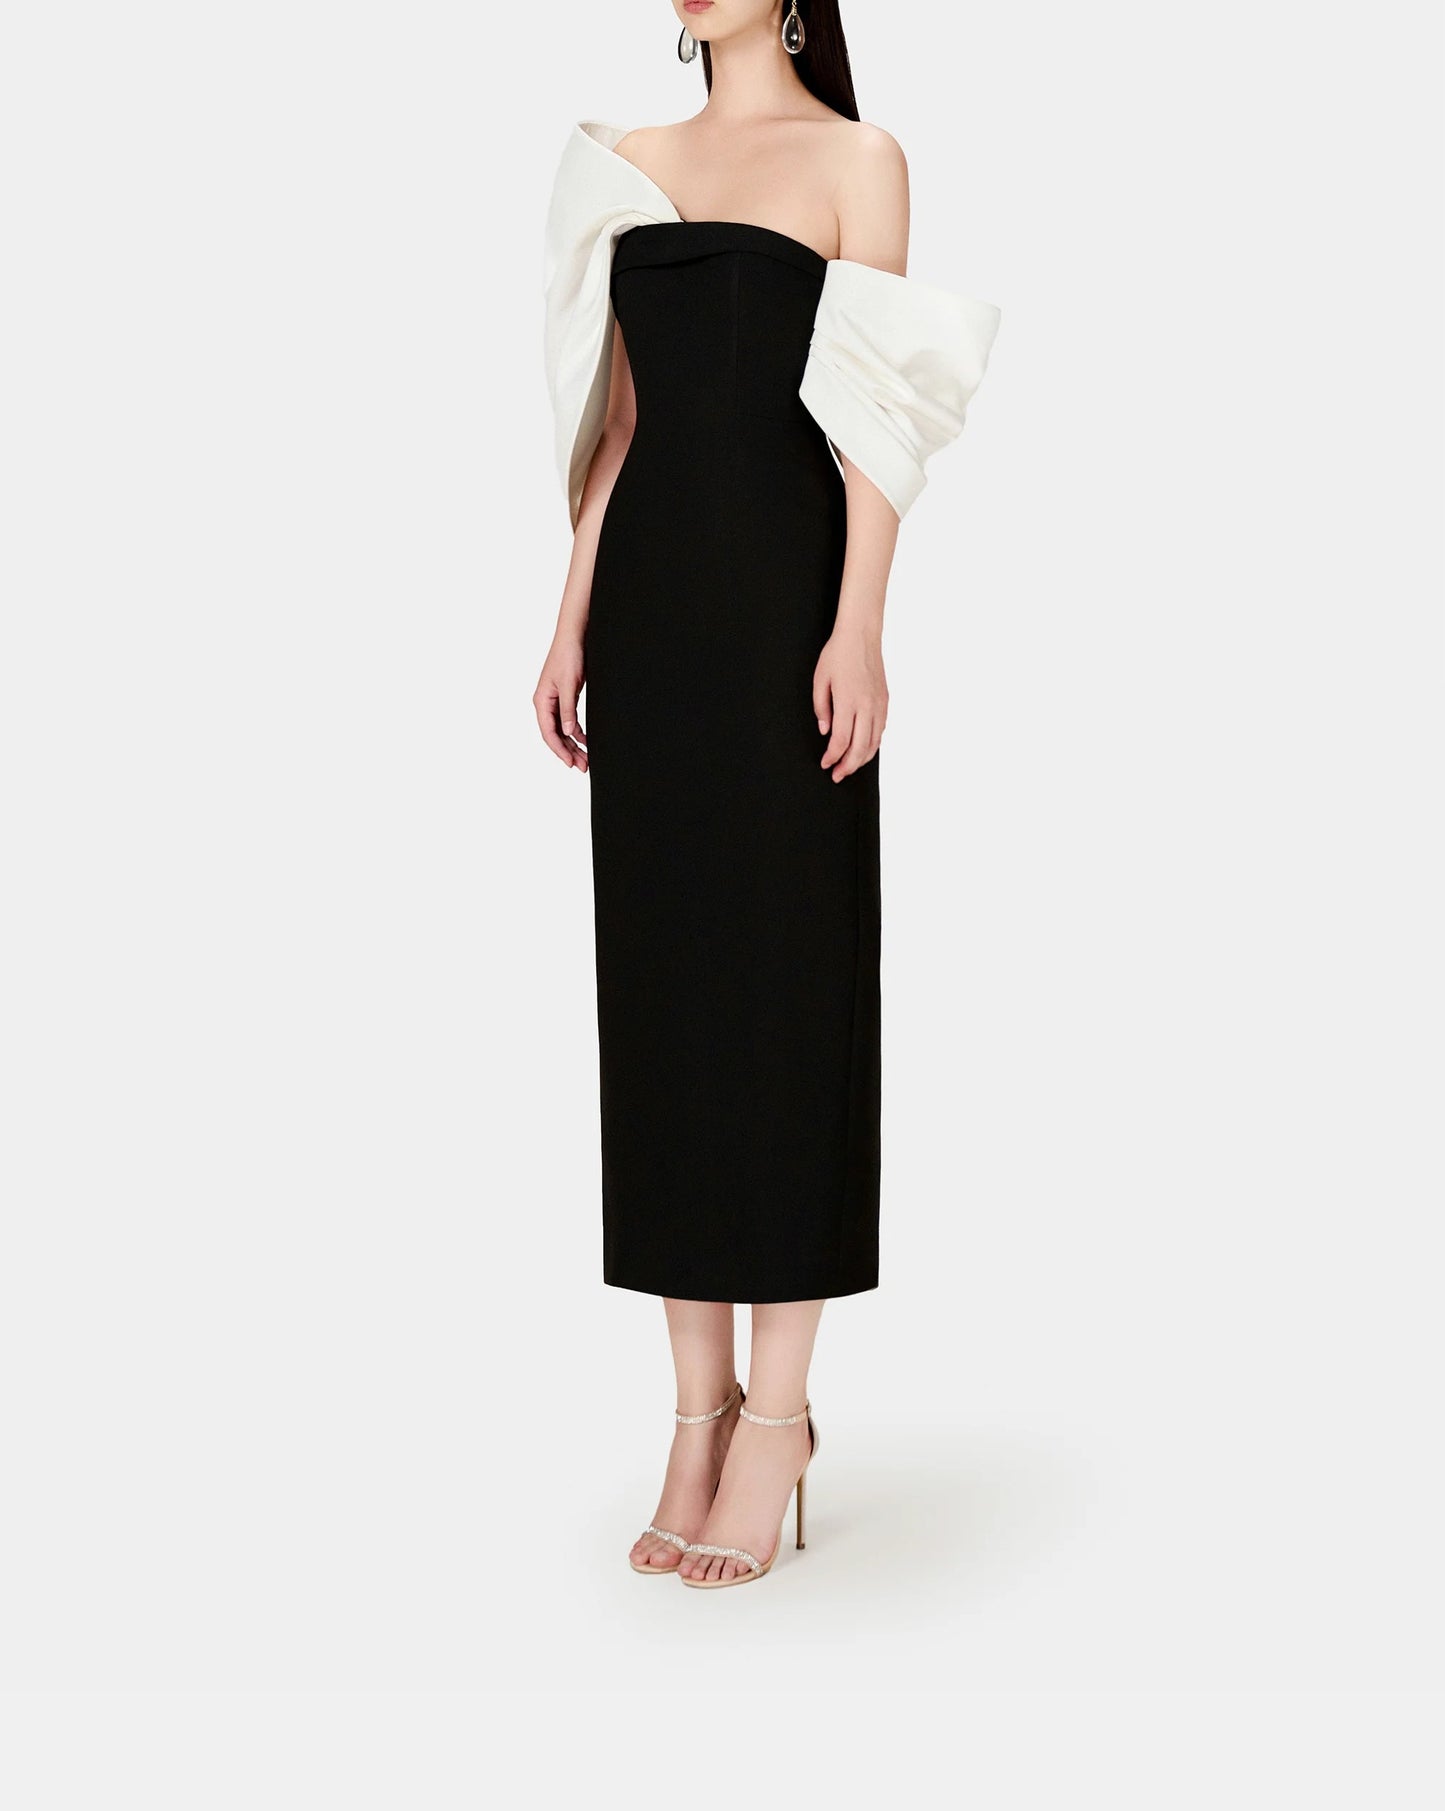 Black white dress tube - Cielie Designer Vienna